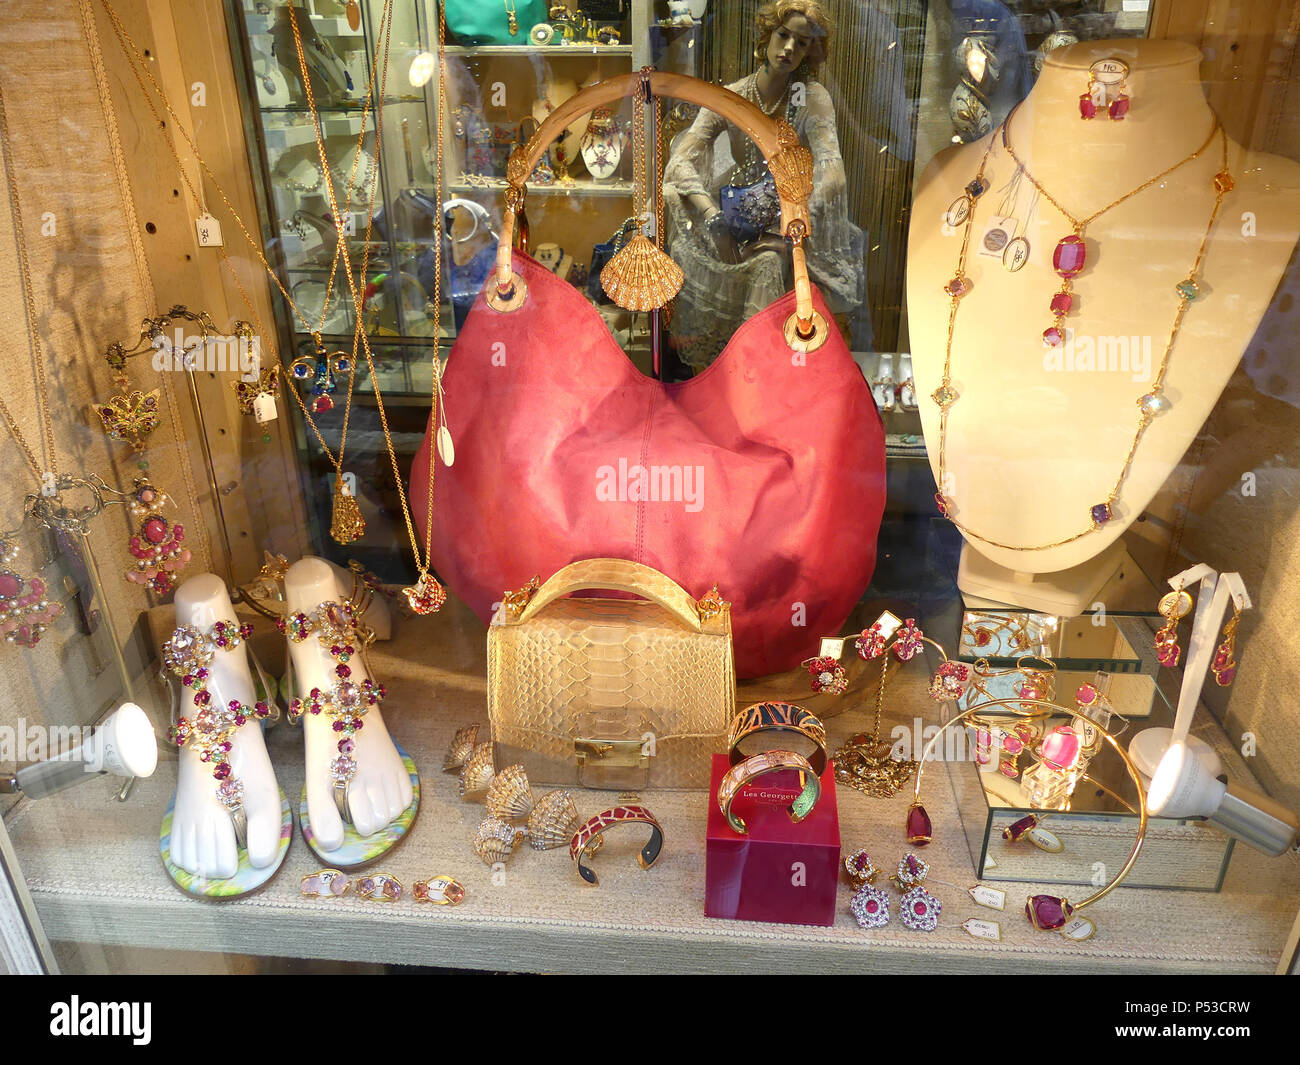 Gioielli e display sacchetto in Simeone, Lago di Garda, Italia. Foto: Tony  Gale Foto stock - Alamy